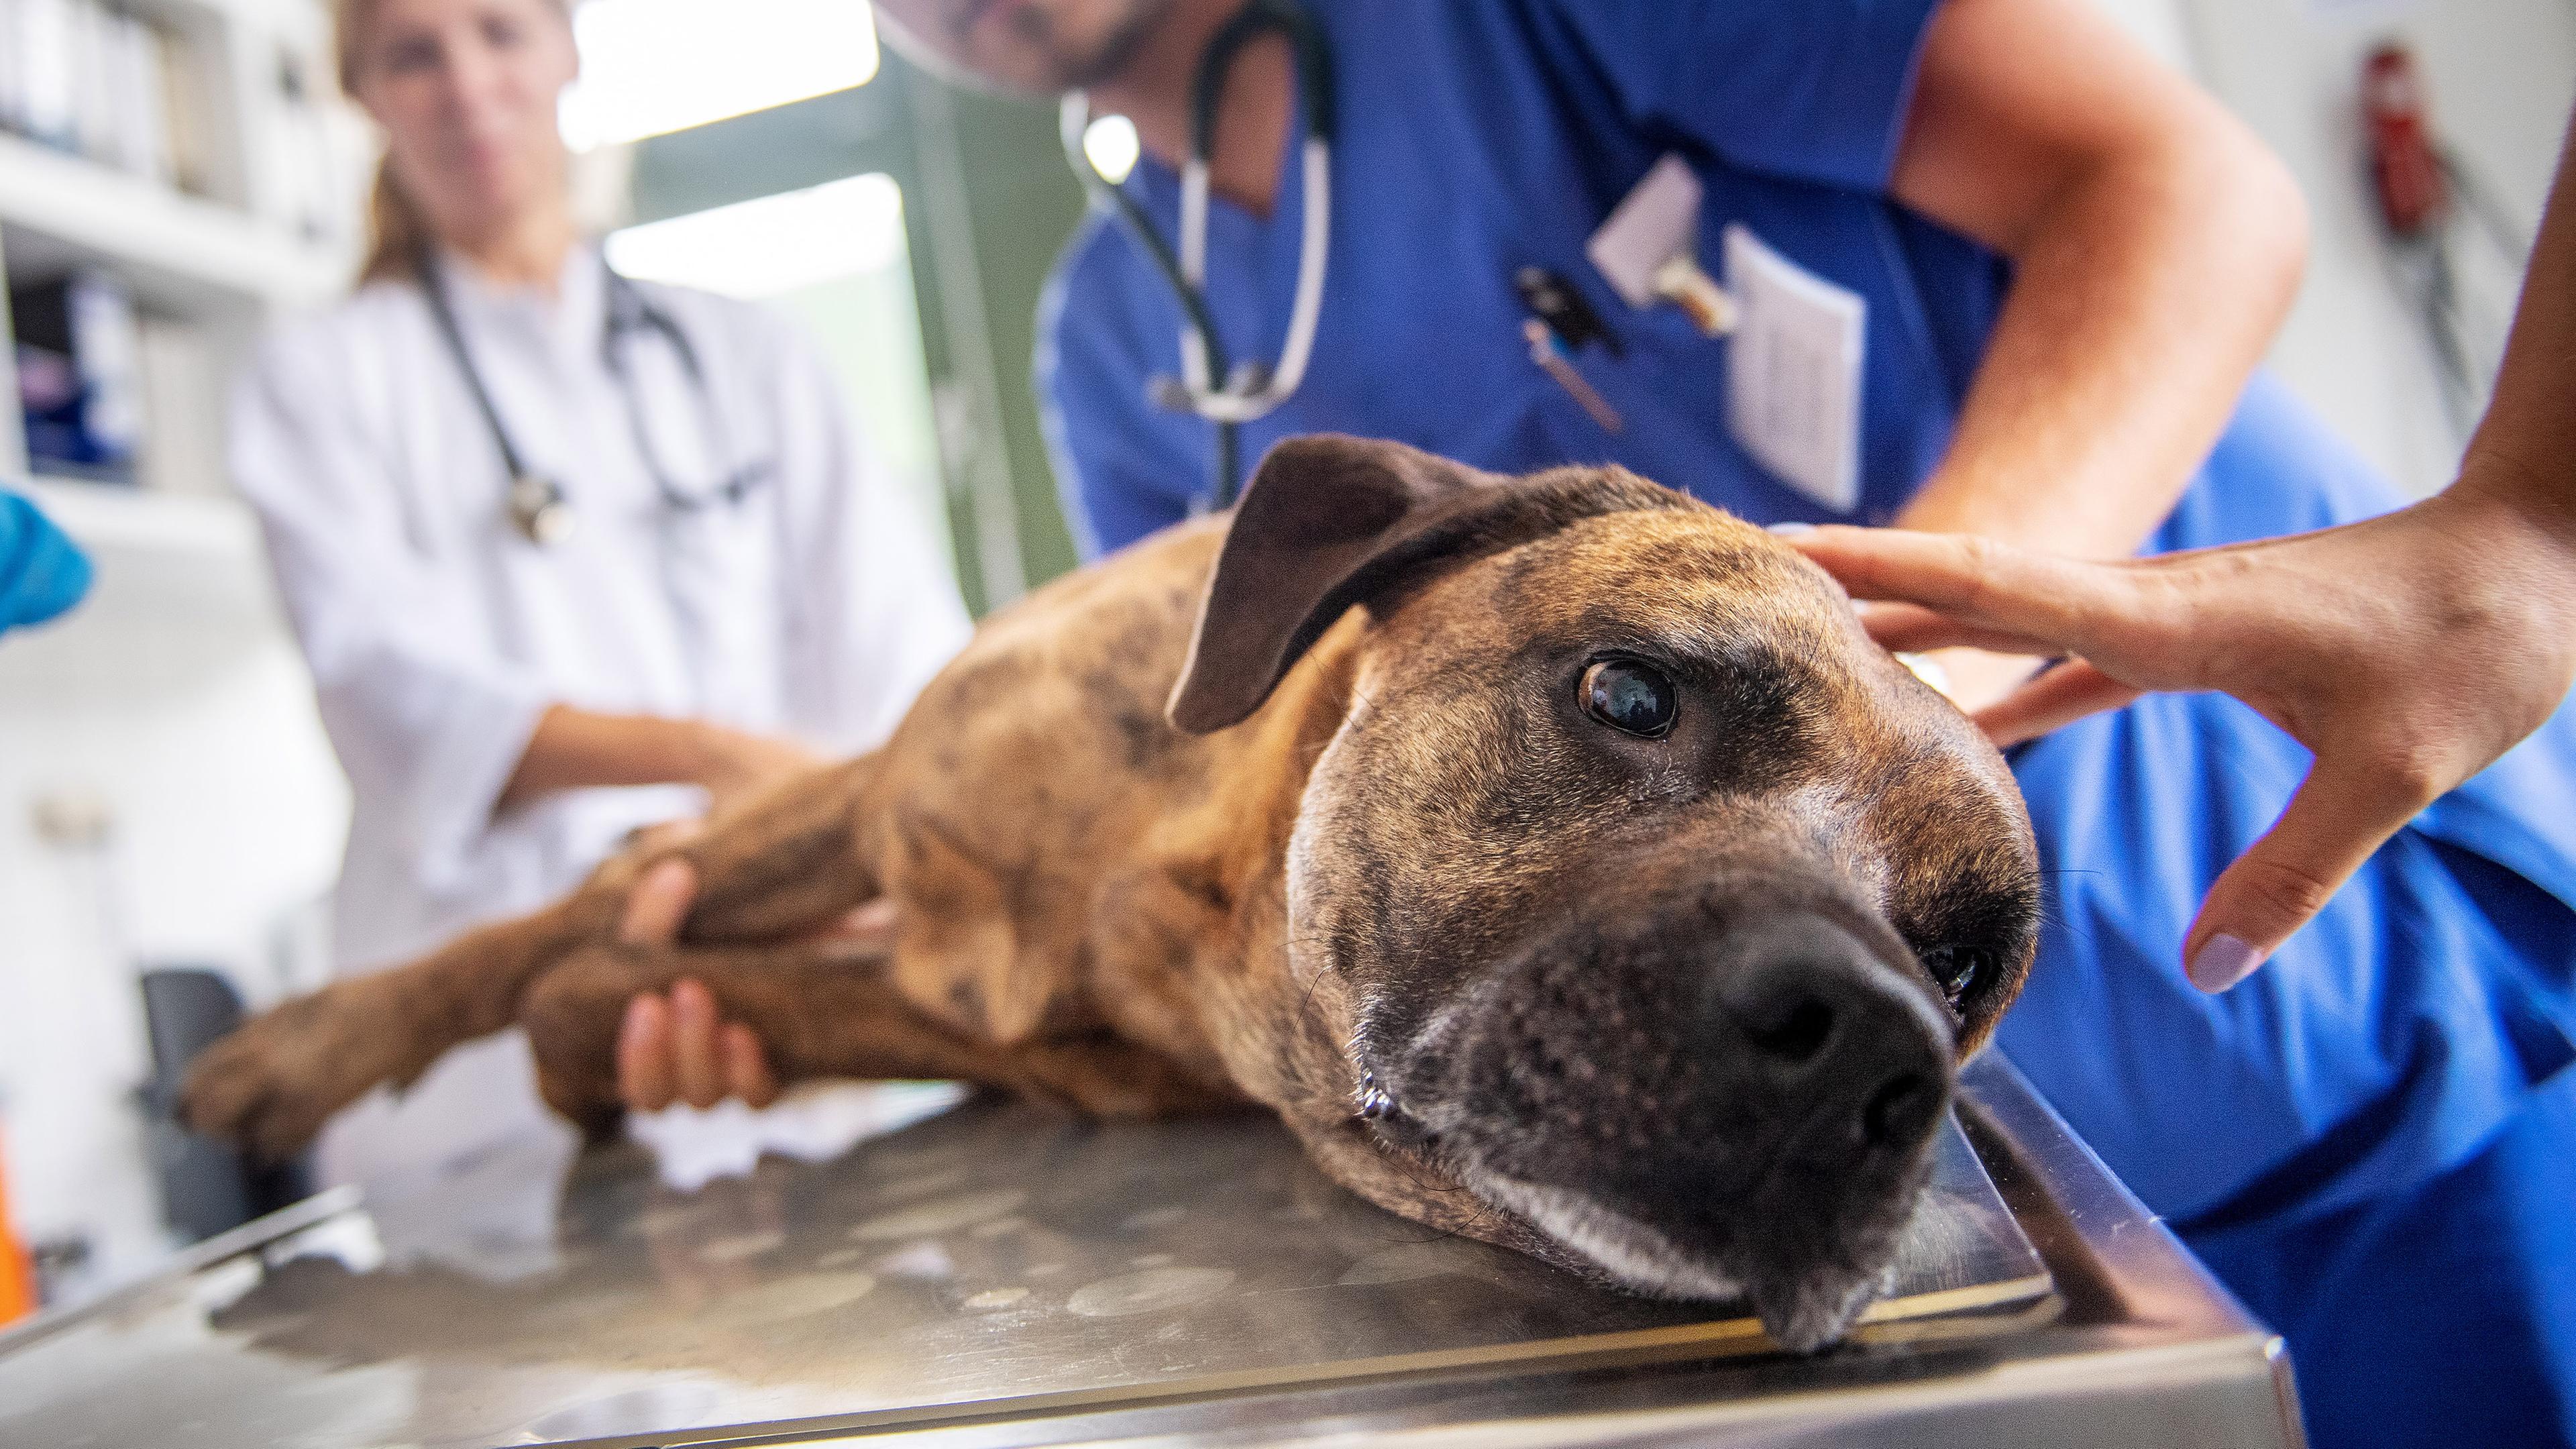 Ein Hund liegt beim Tierarzt auf dem Behandlungstisch und wird von mehreren Personen behandelt.